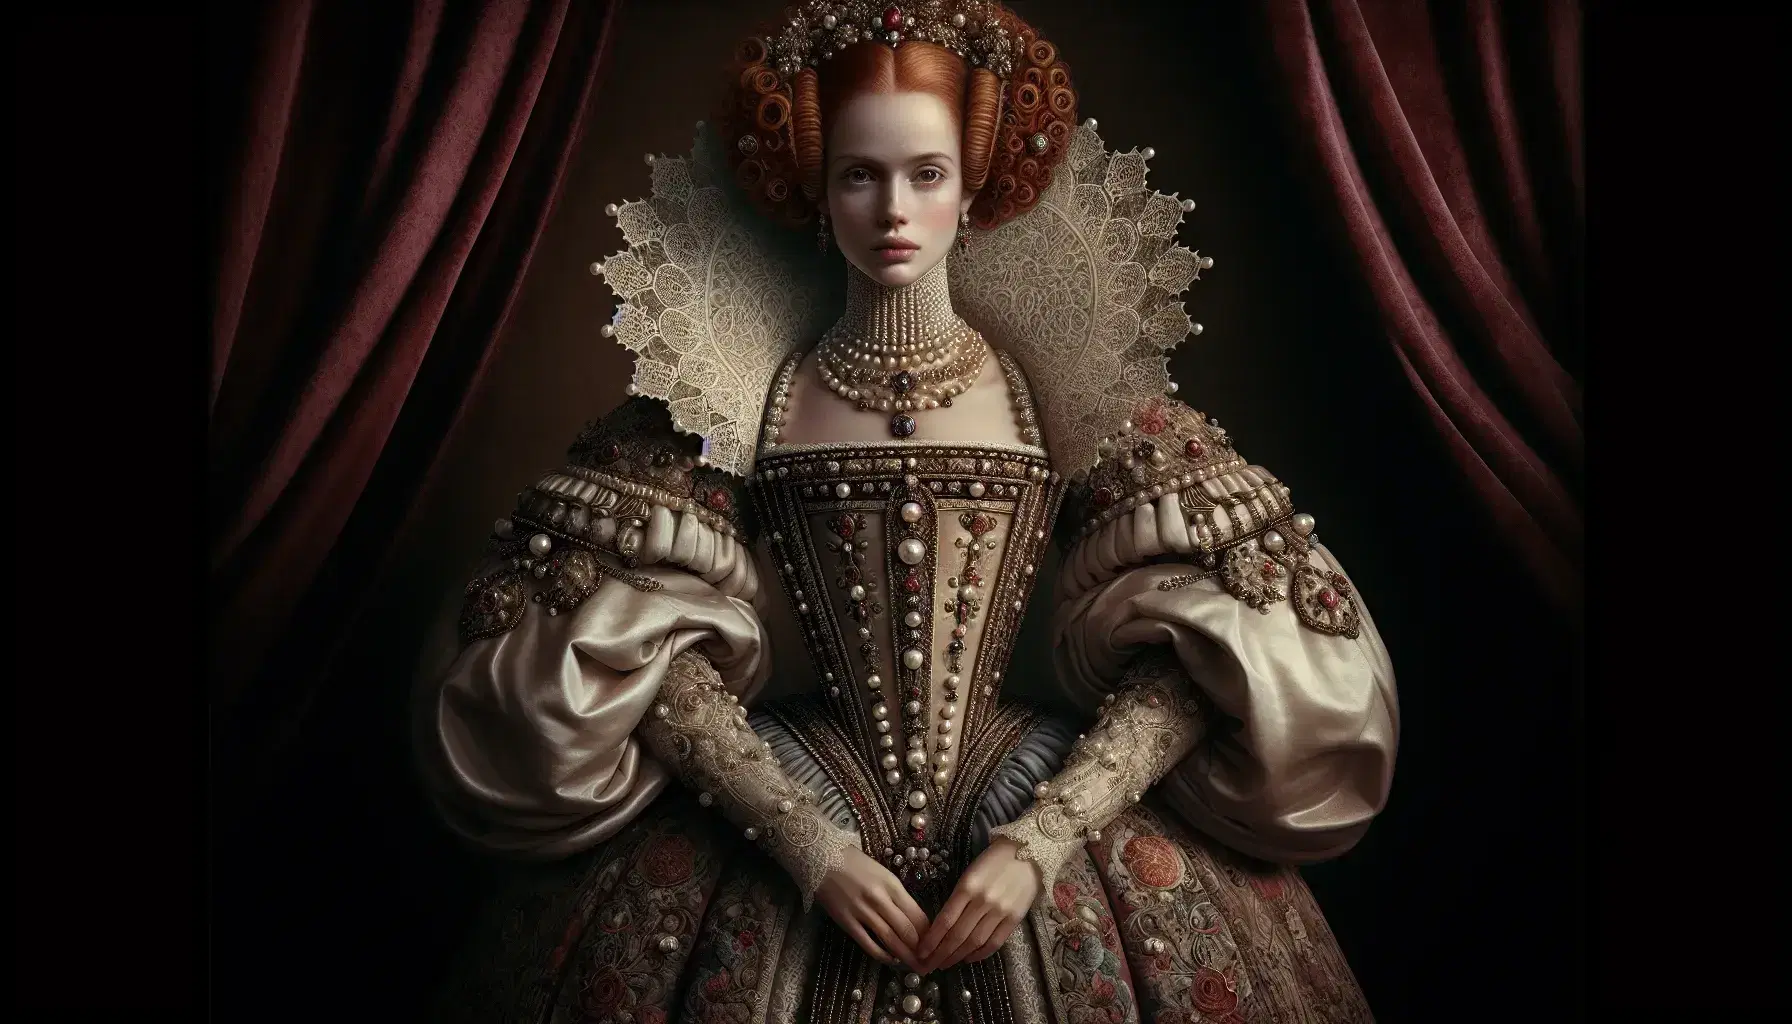 Ritratto di donna aristocratica rinascimentale con abito sontuoso, capelli rossi adornati di perle e sguardo espressivo.